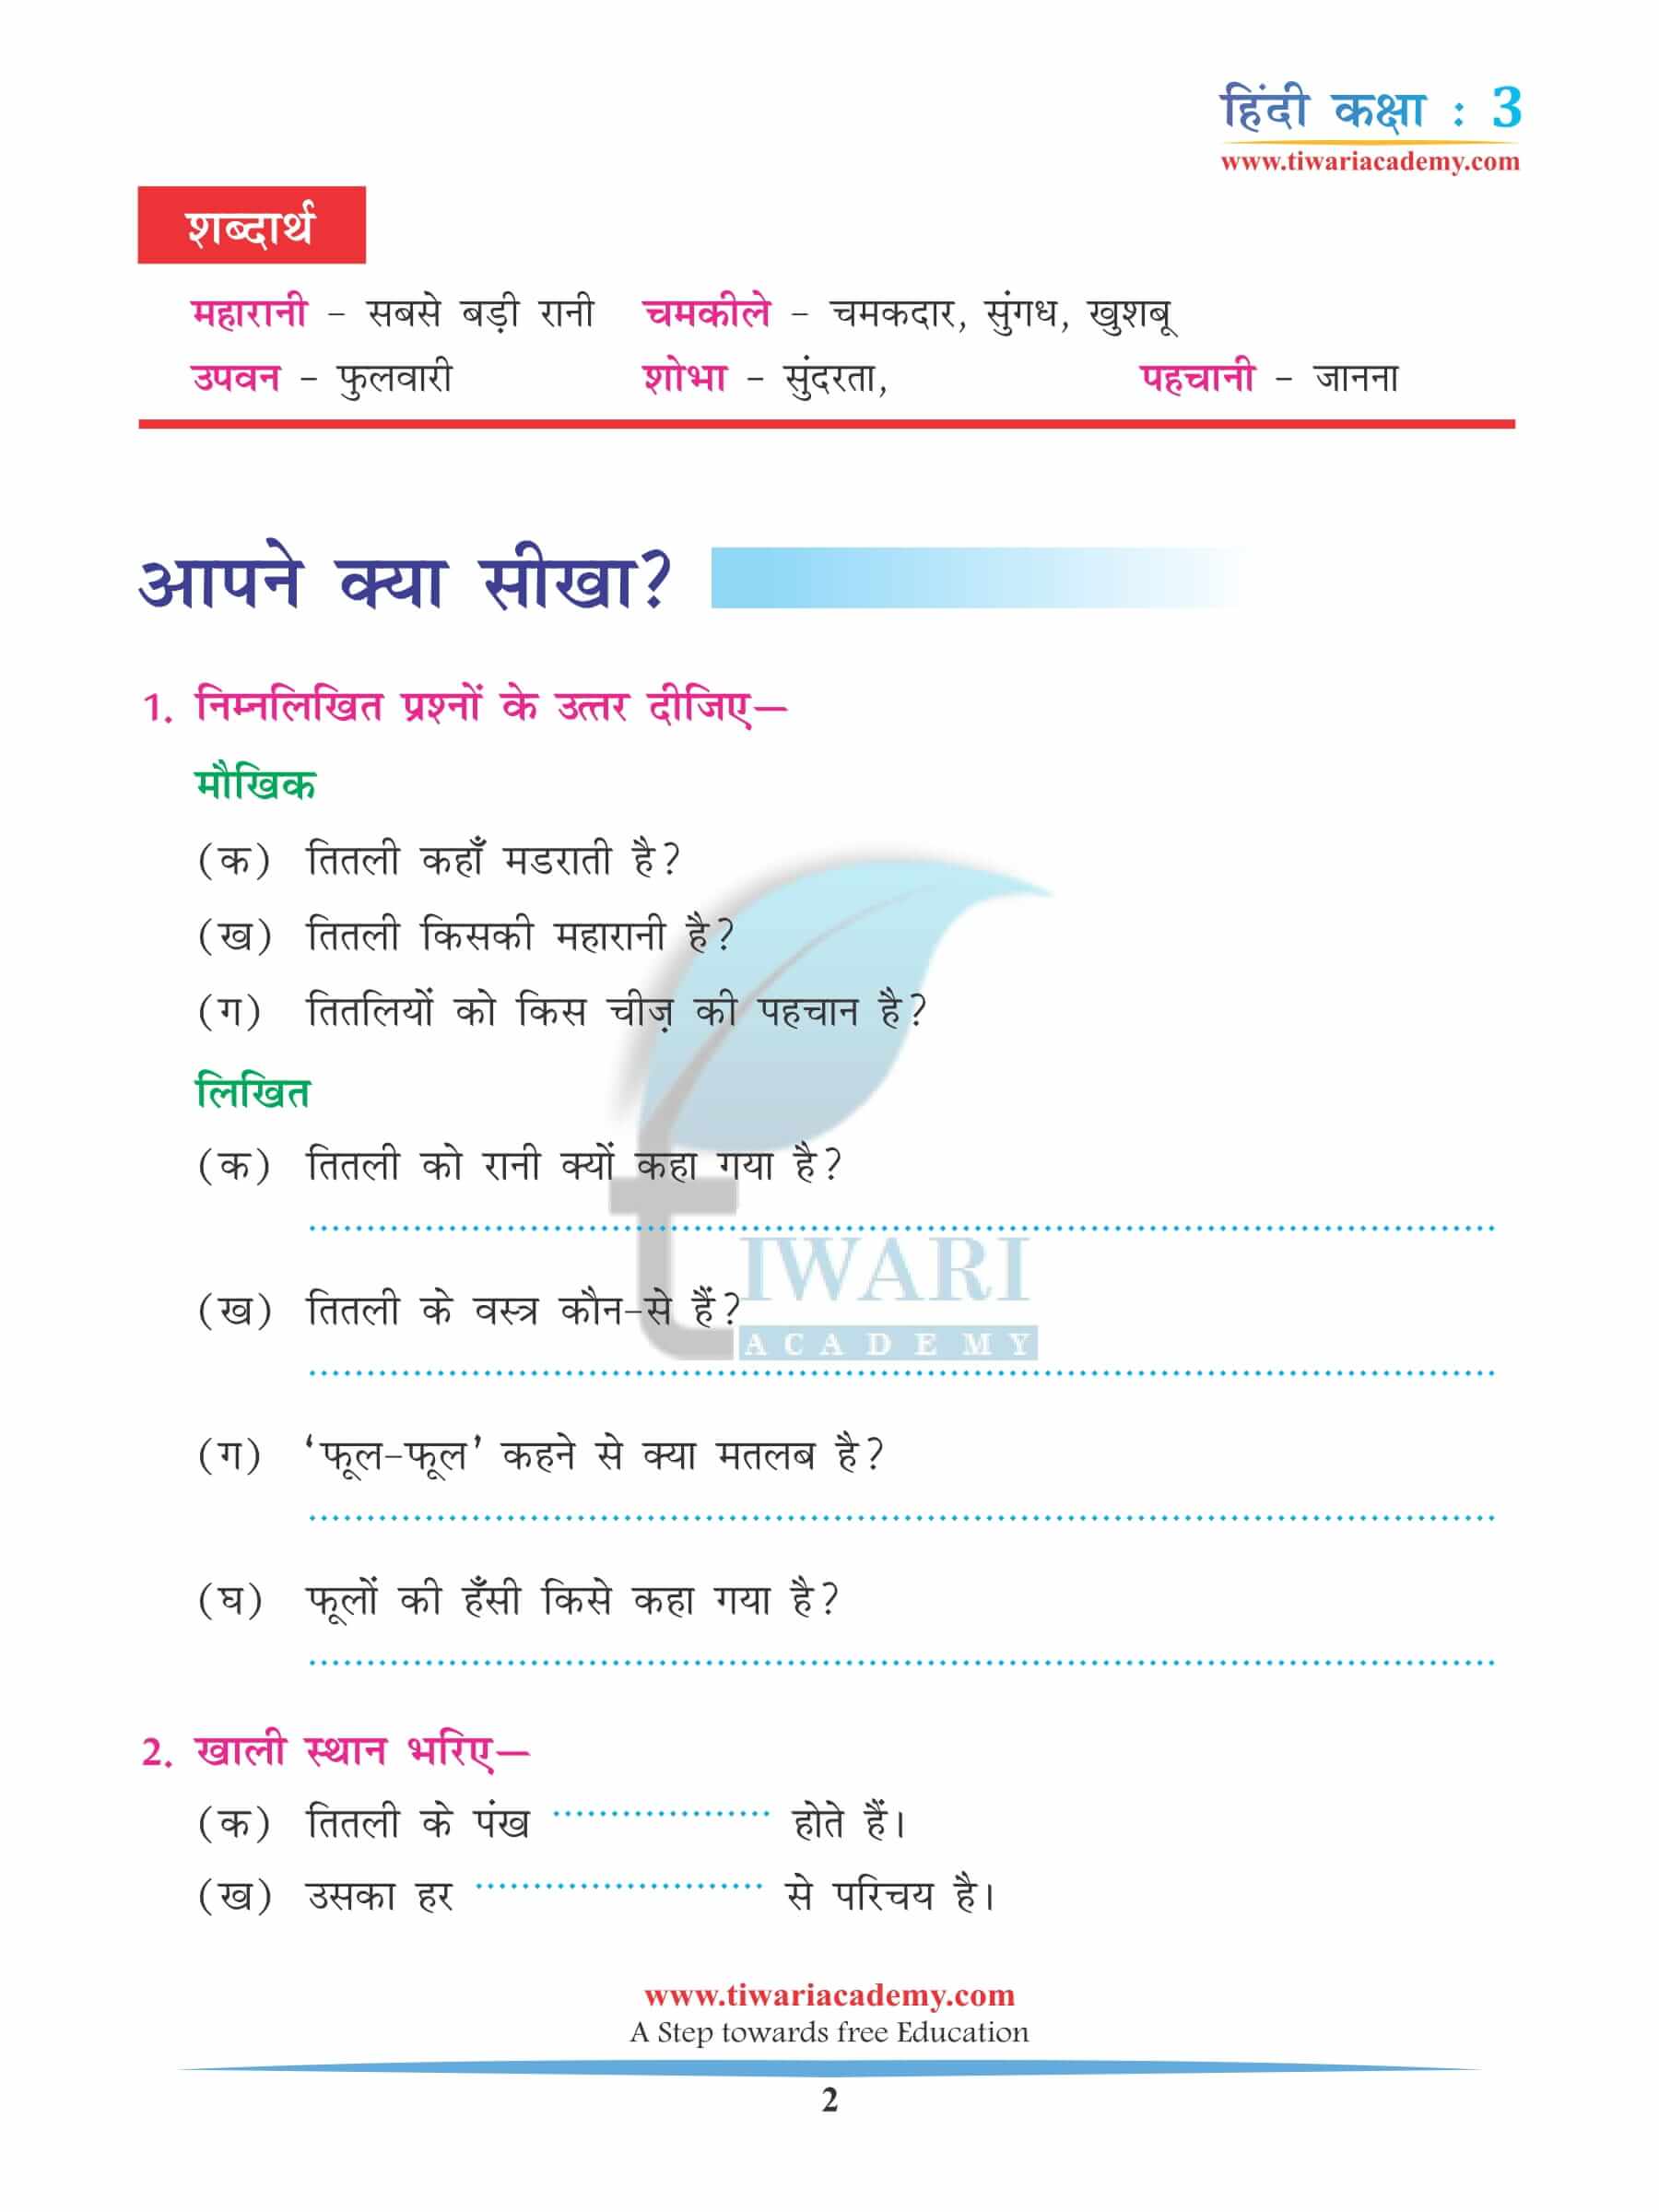 कक्षा 3 हिंदी अध्याय 1 अभ्यास के प्रश्न उत्तर